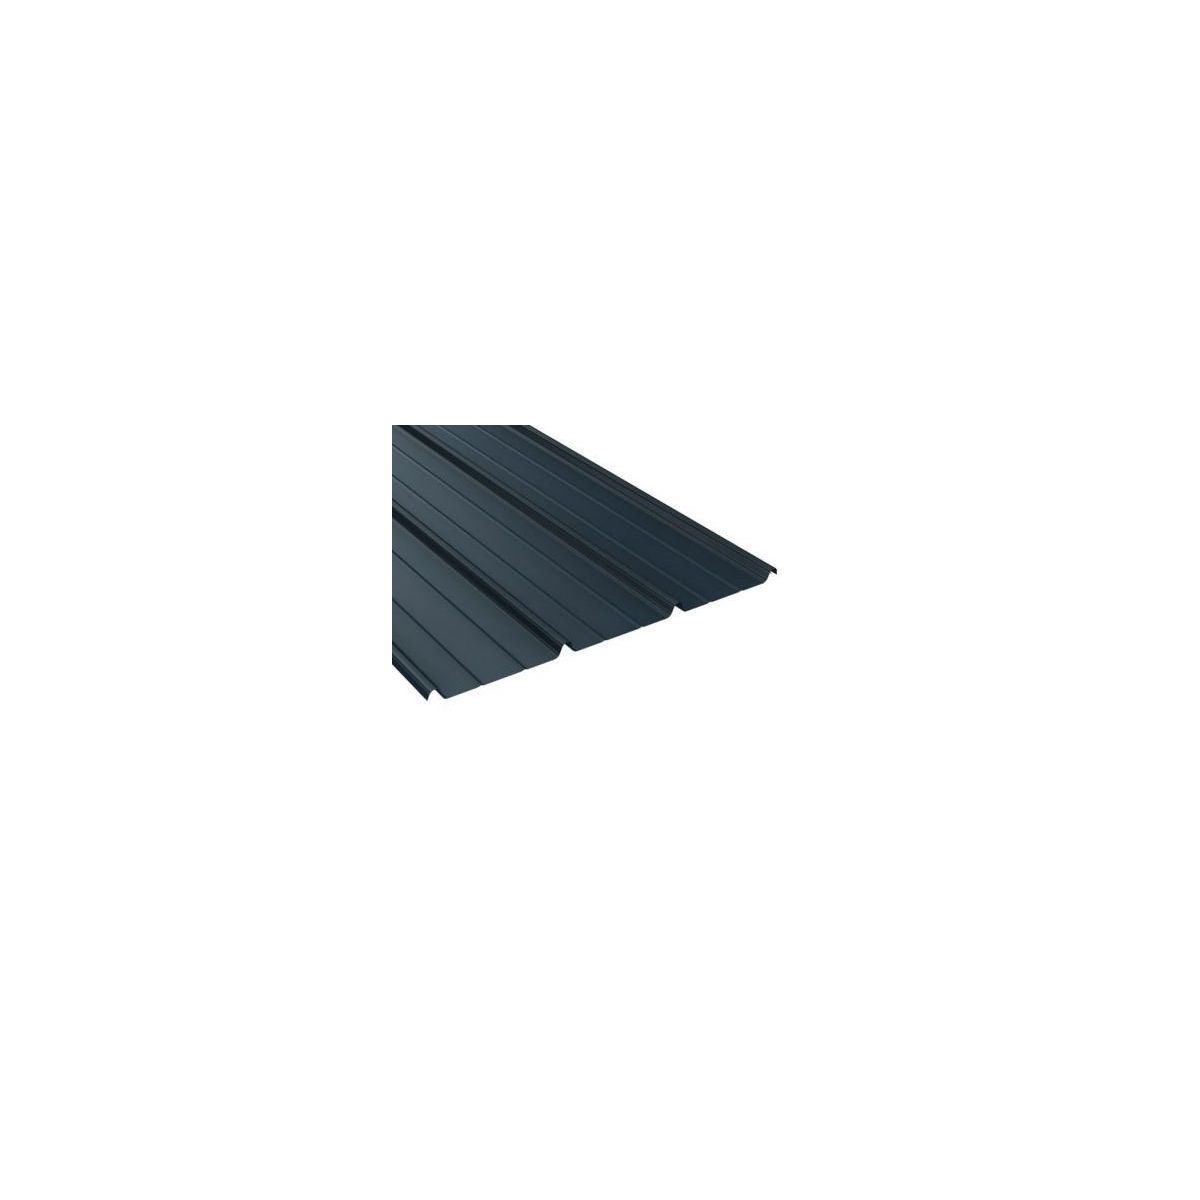 Tôle de toiture acier galvanisé - Anti condensation - Ral 7016 ( gris anthracite) - Longueur 6m